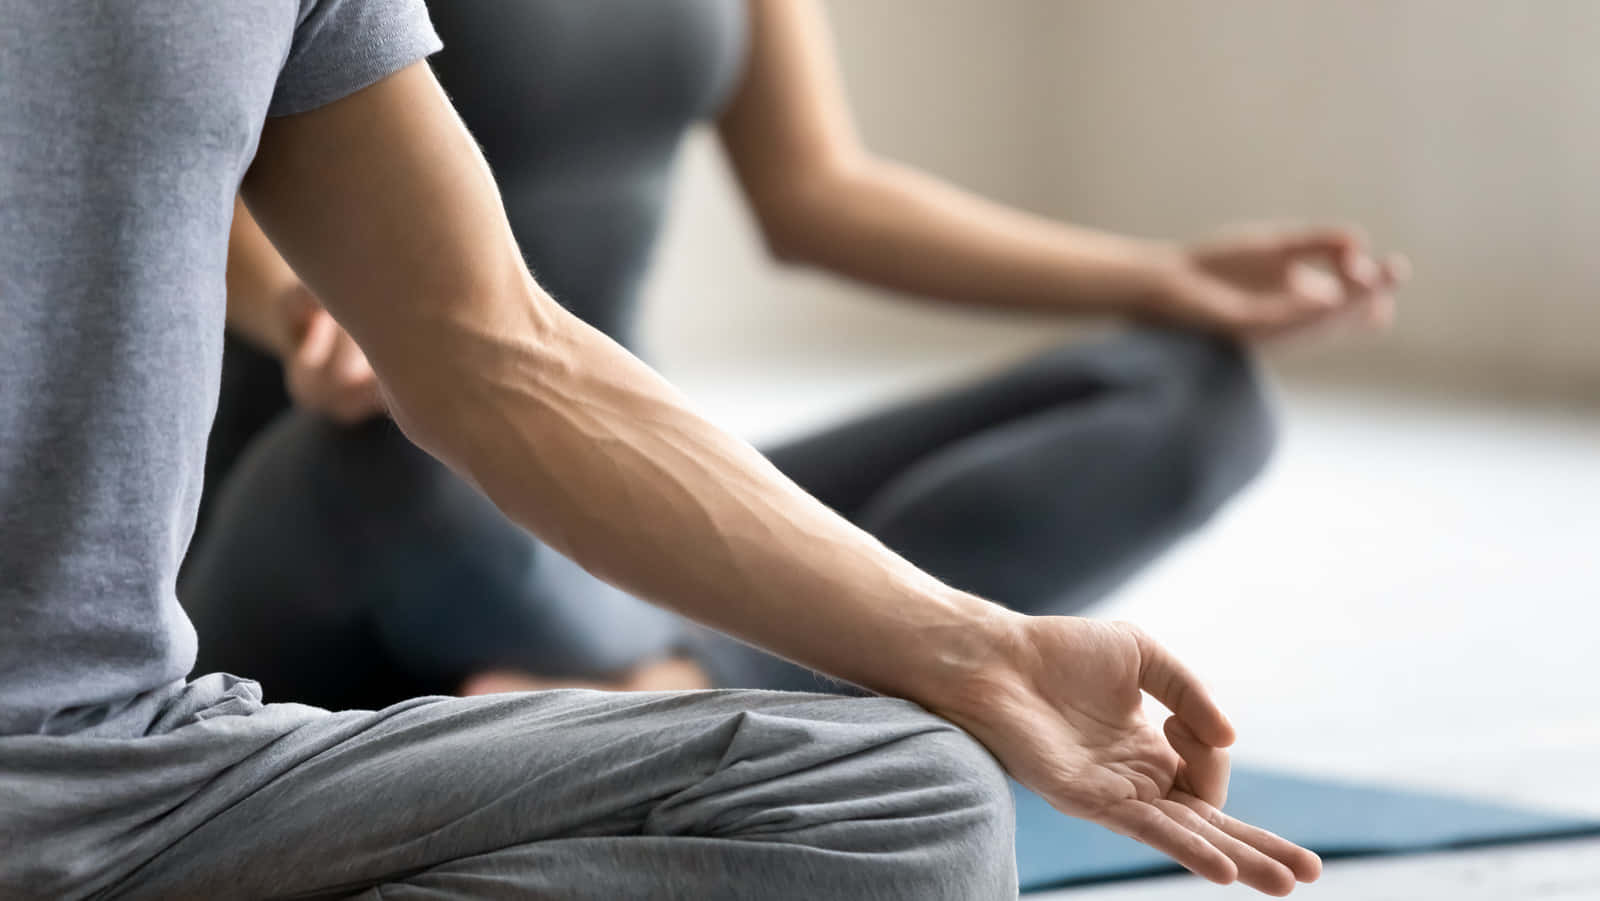 Dospersonas Haciendo Yoga En Un Estudio De Yoga